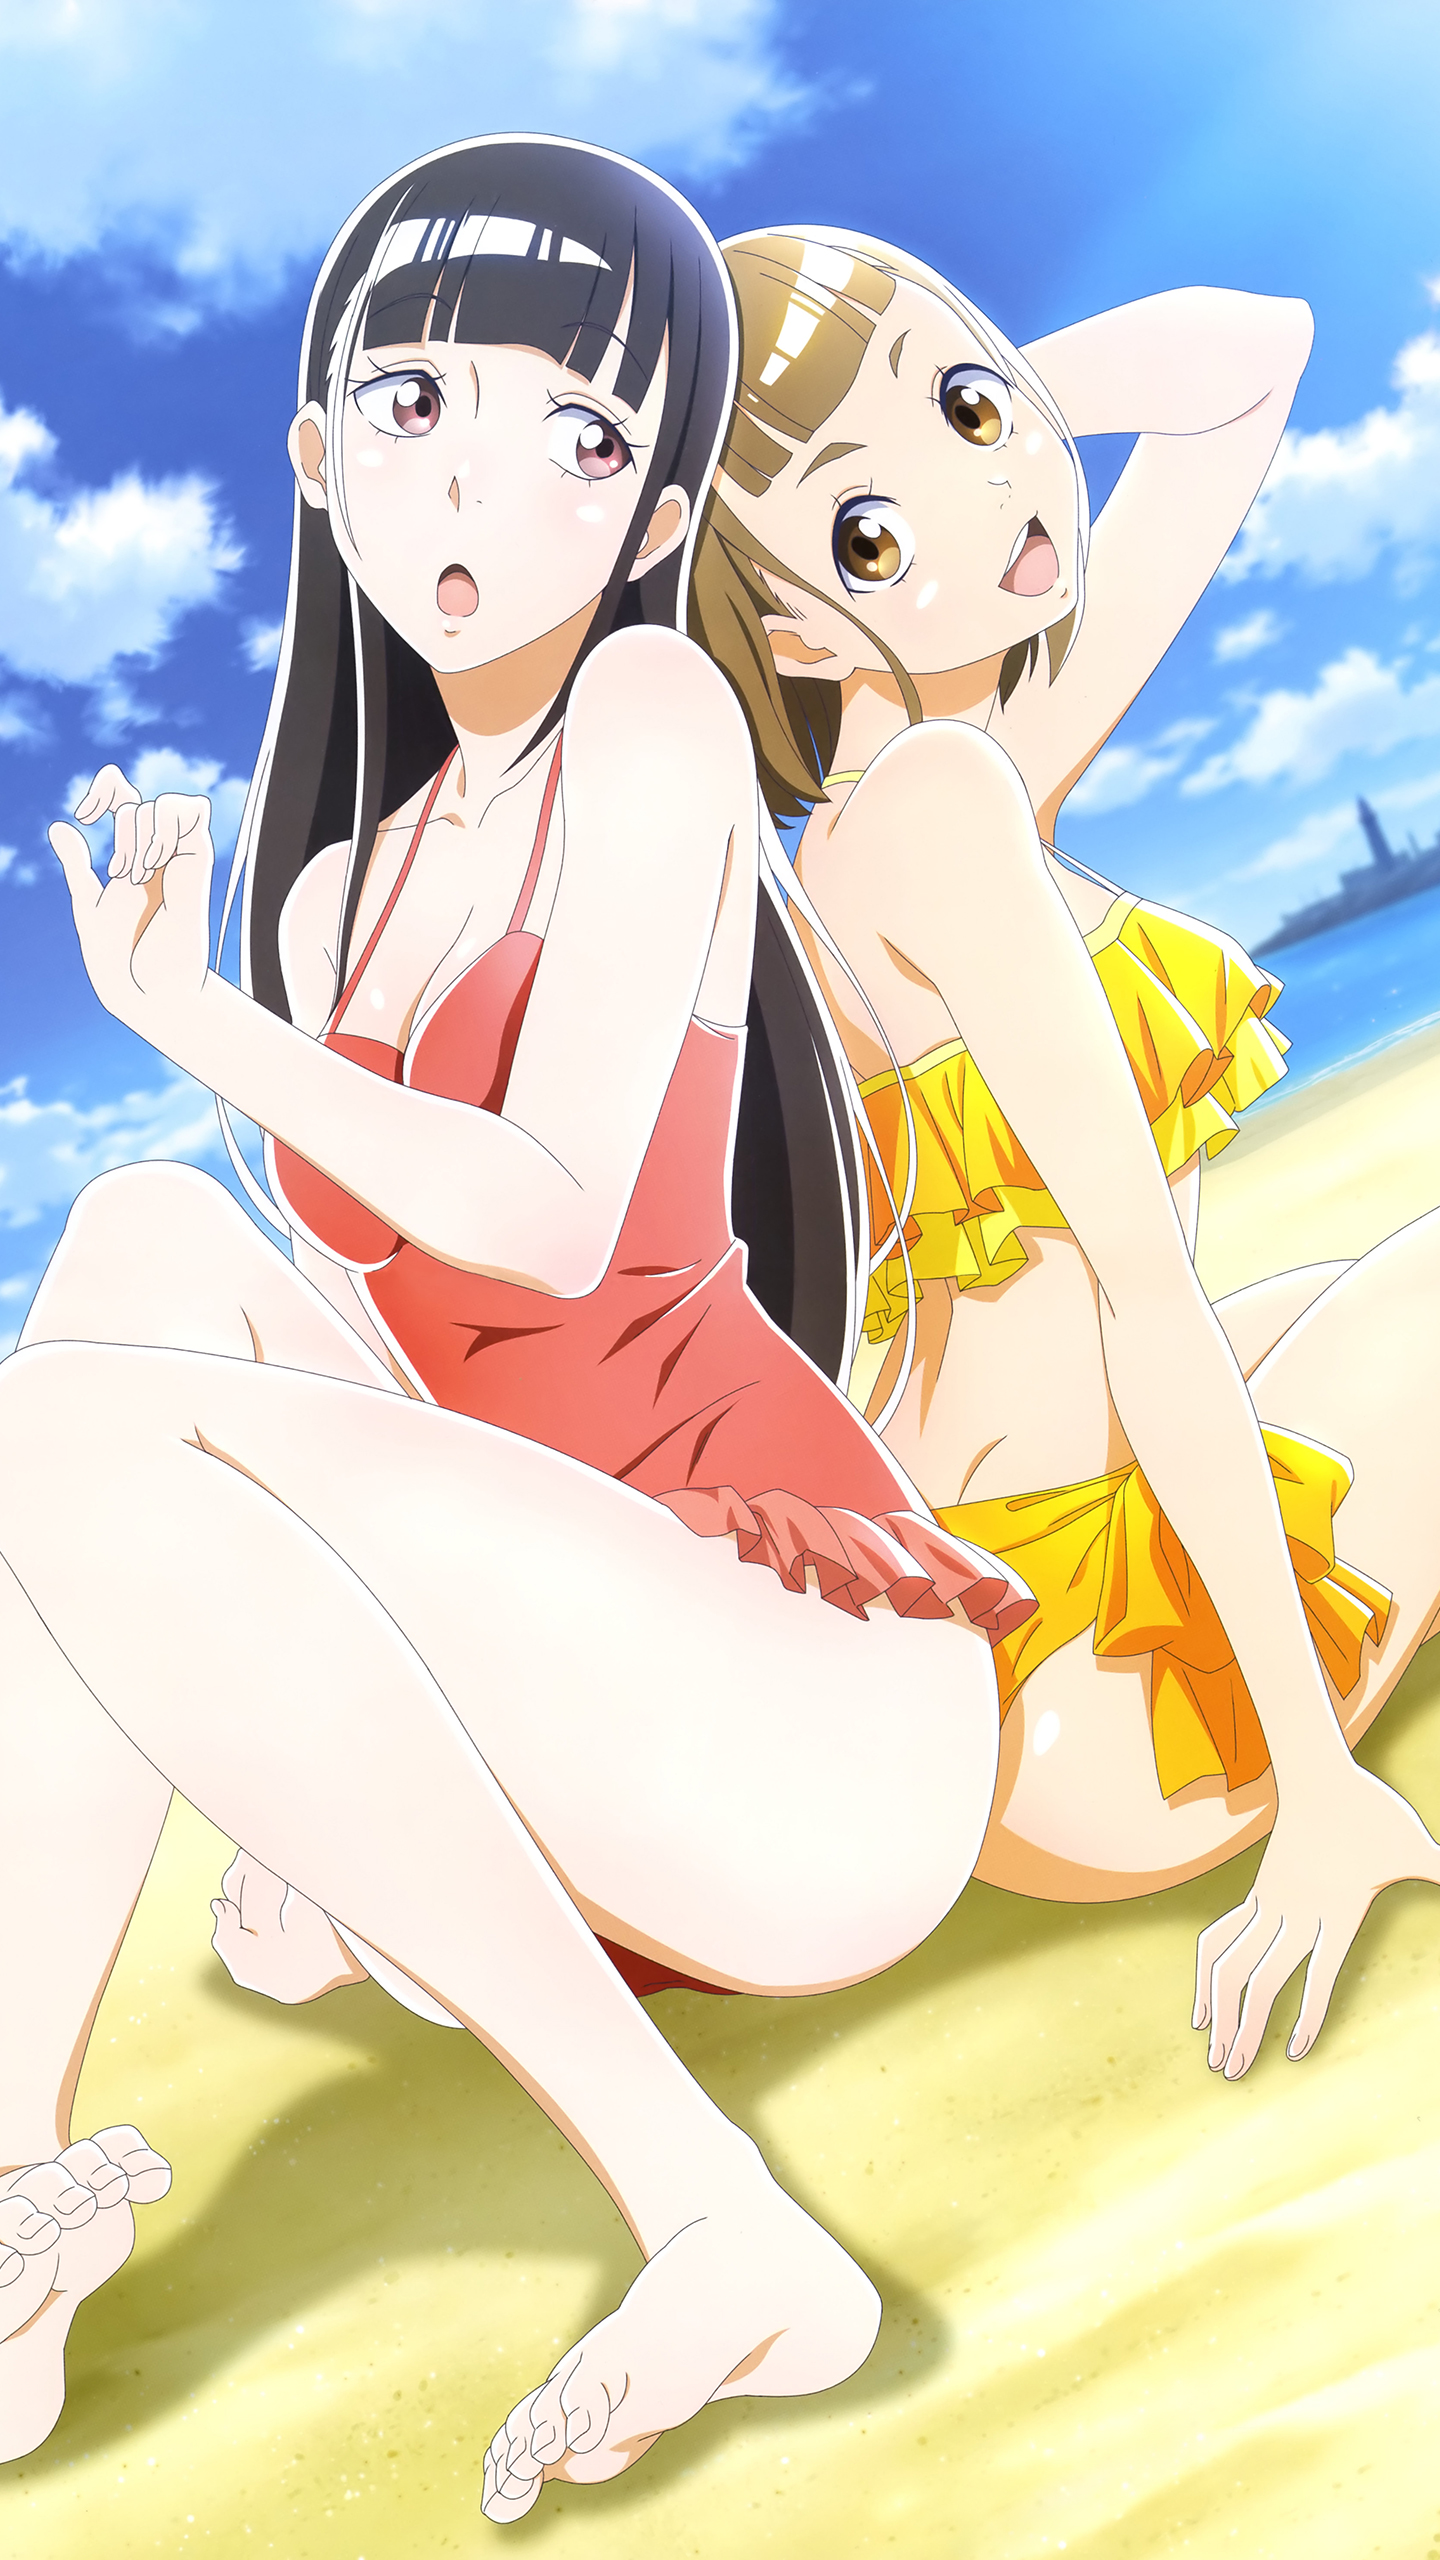 File:Sora Yori mo Tooi Basho8 5.jpg - Anime Bath Scene Wiki